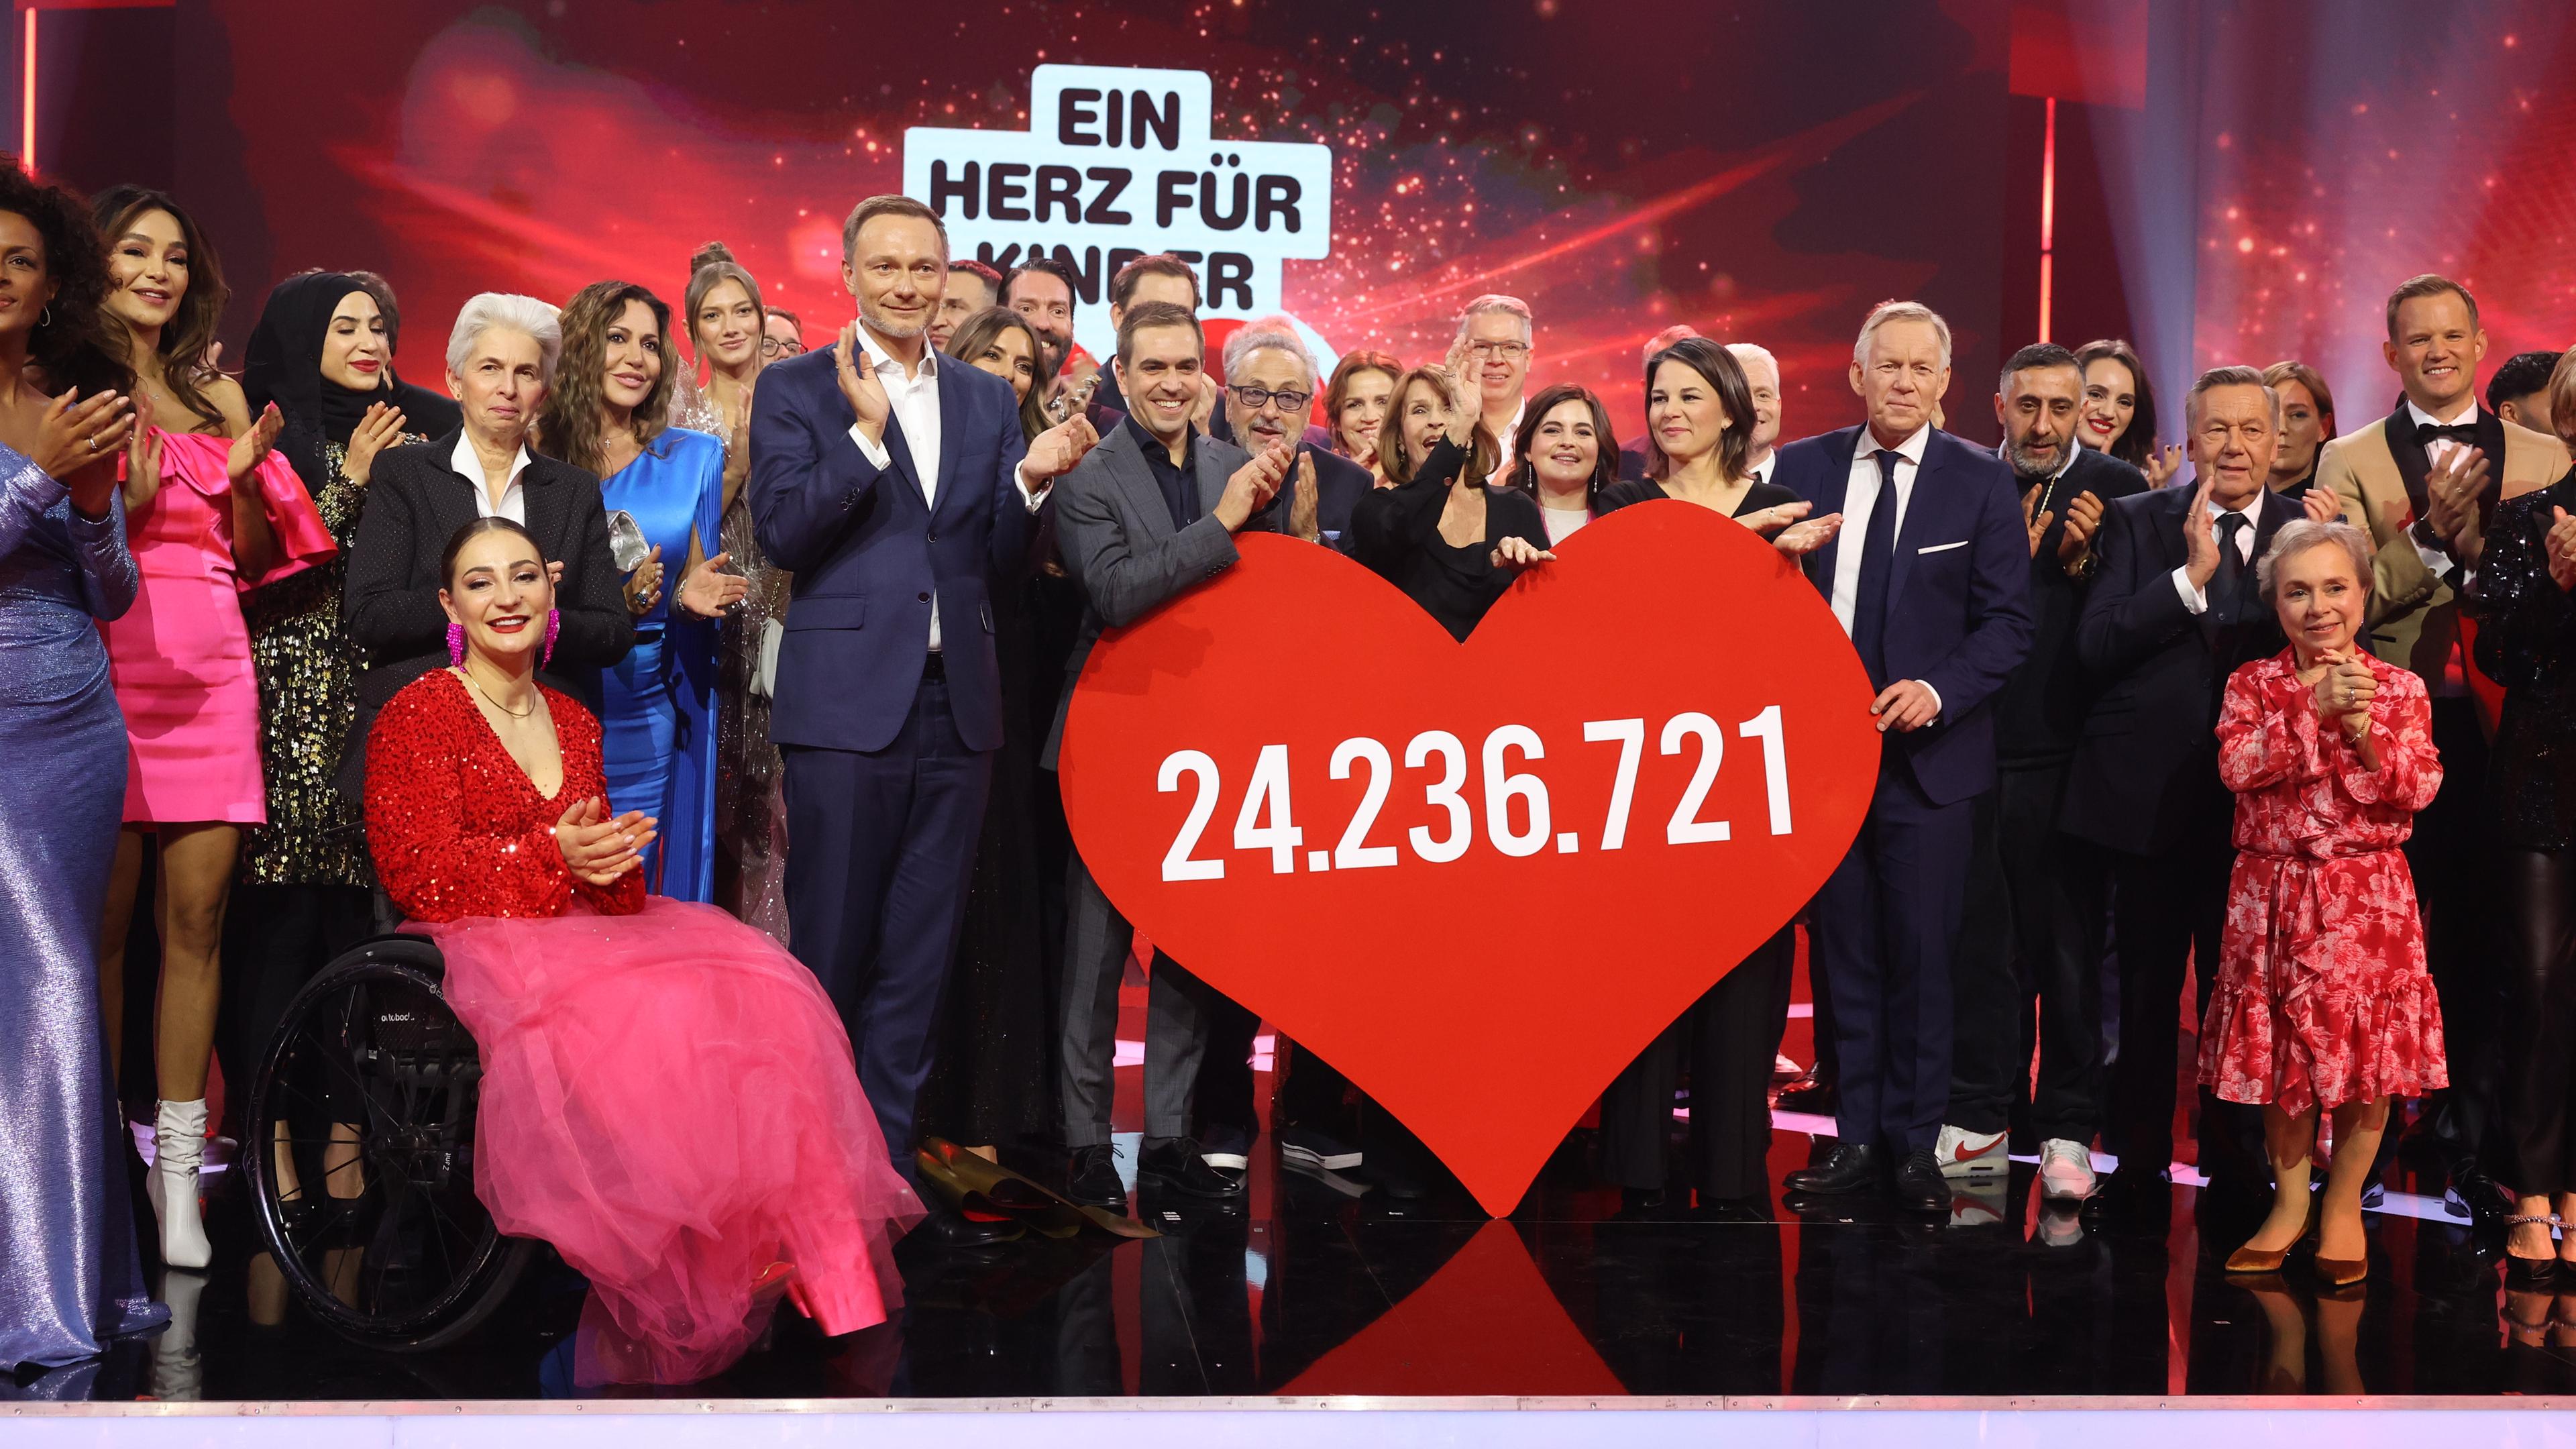 Gäste der Veranstaltung stehen auf der Bühne und halten ein Herz mit der gespendeten Geldsumme in Höhe von 24.236.721 Euro bei der "Bild"-Spendengala "Ein Herz für Kinder".